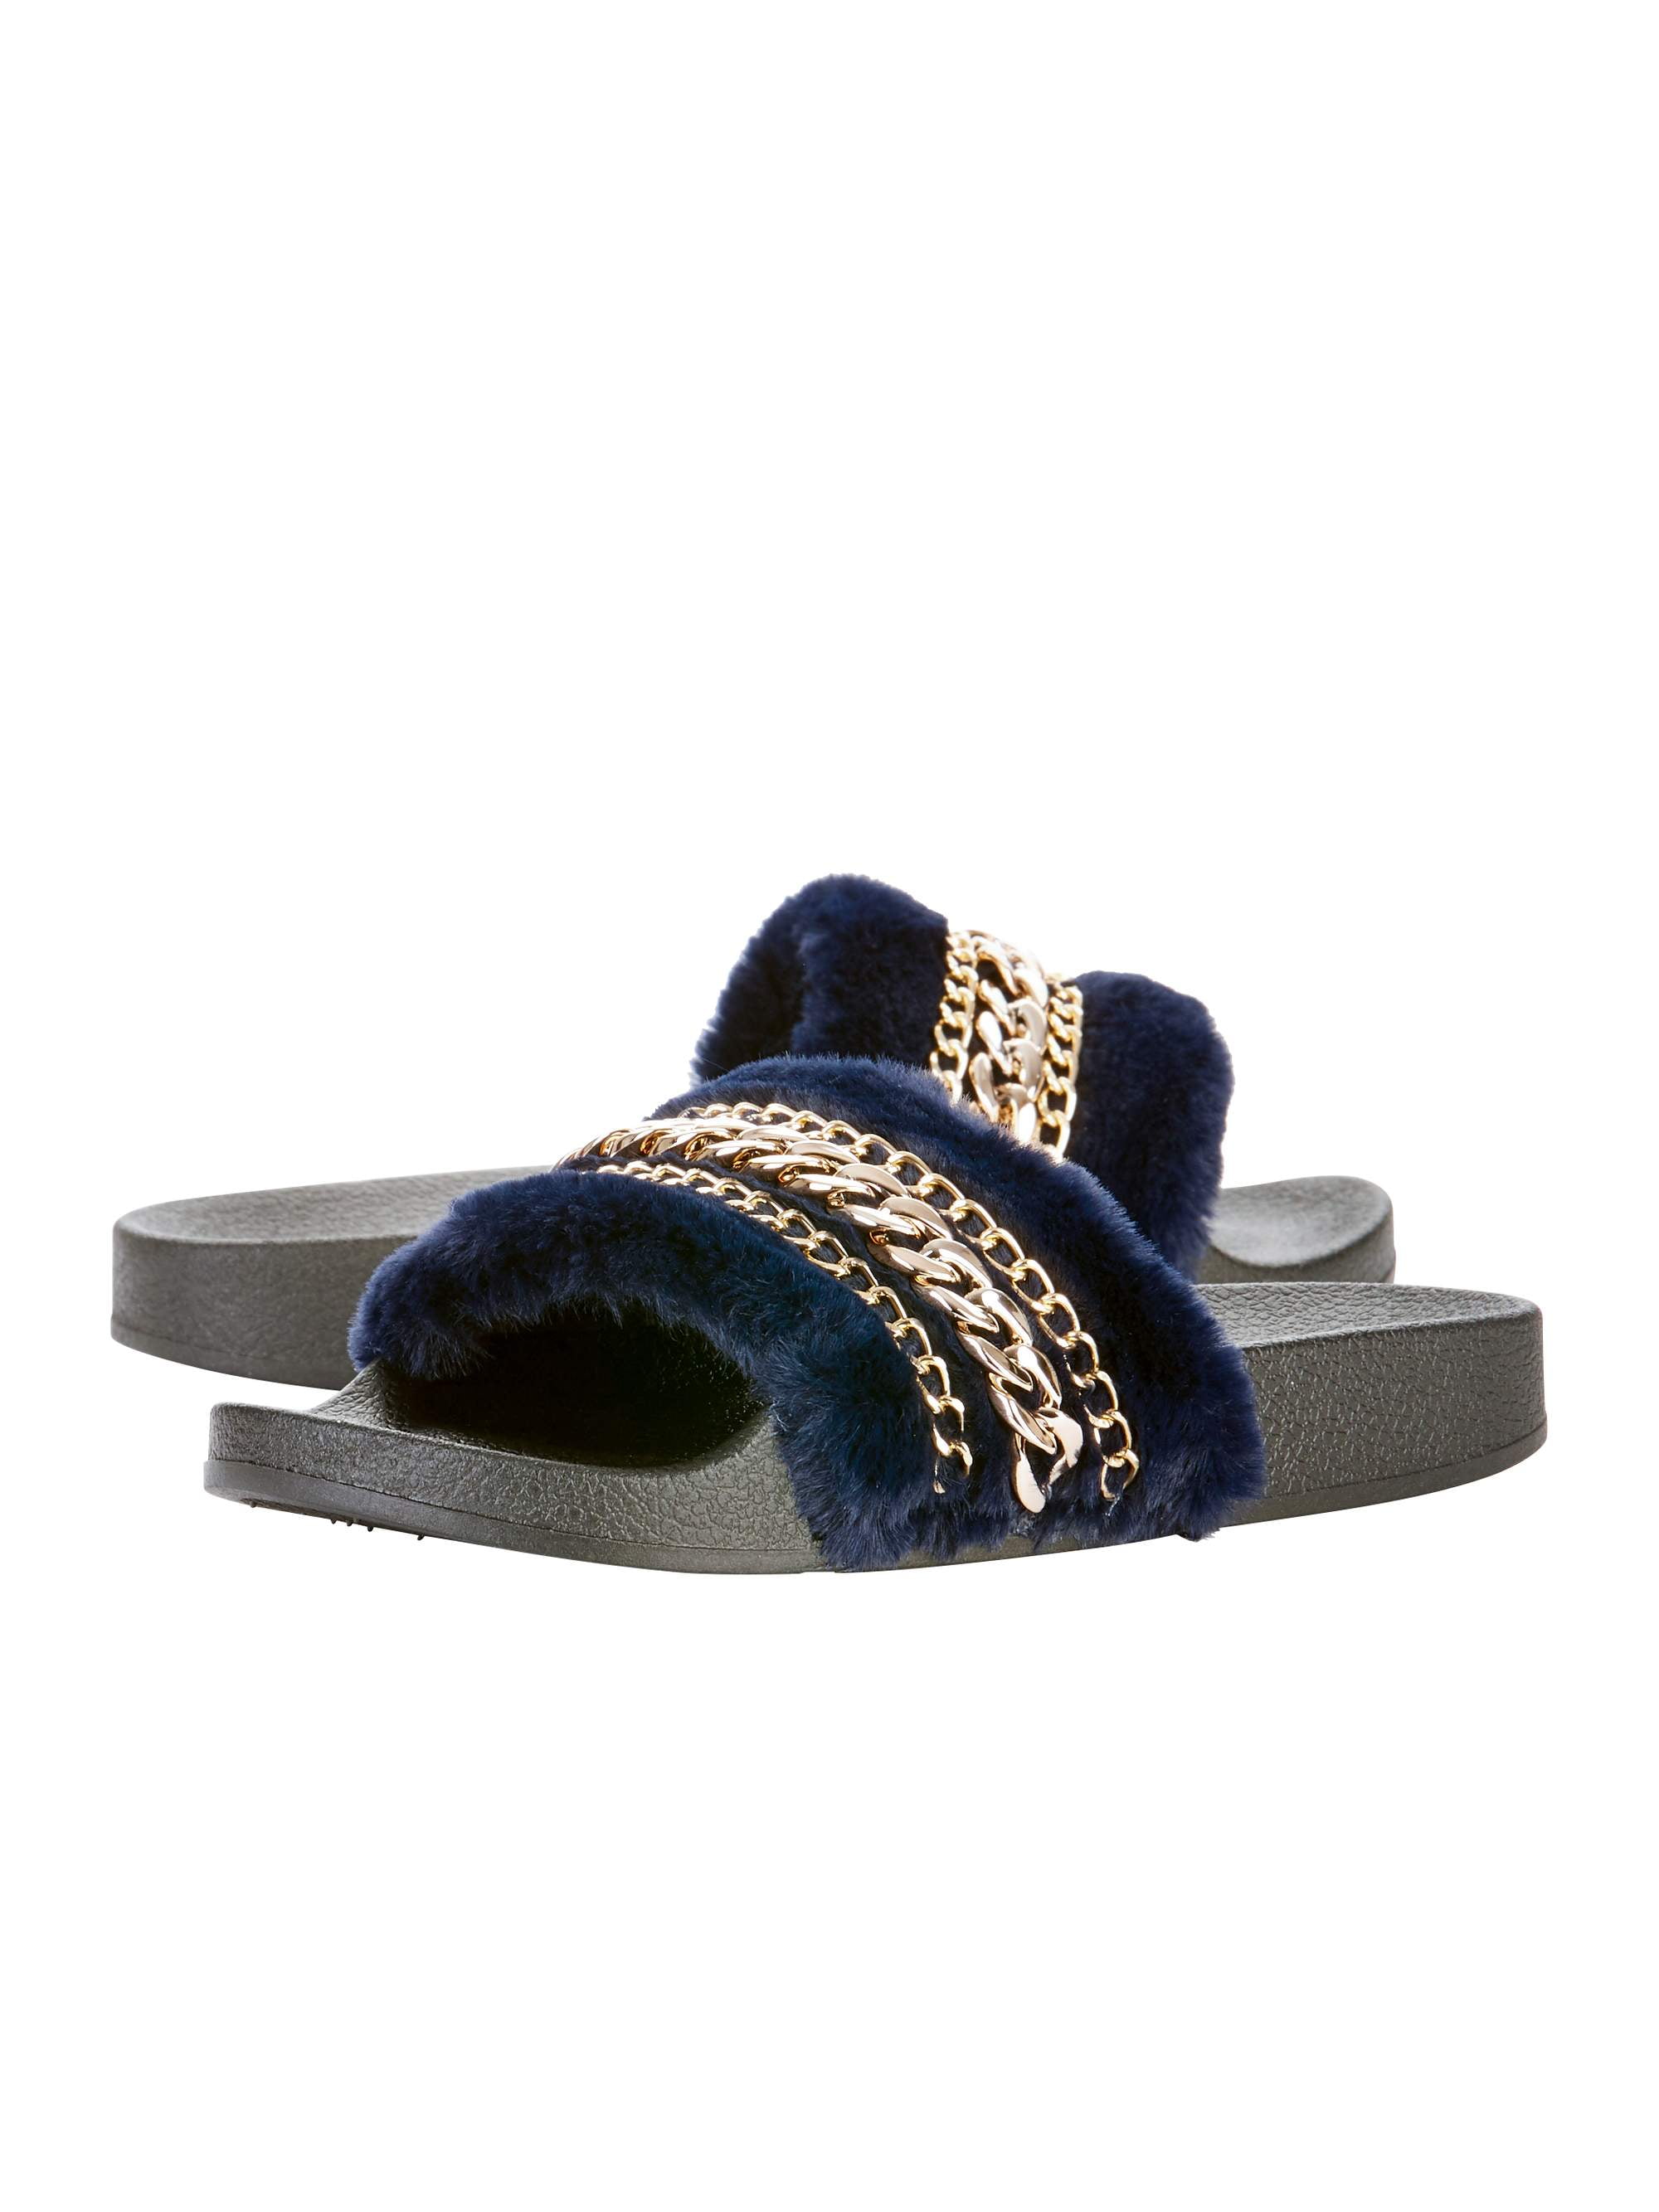 Womens Winter Fur Snow Hard Sole Slipper Slip On Casual Mule Warm Shoes Size 3-8 